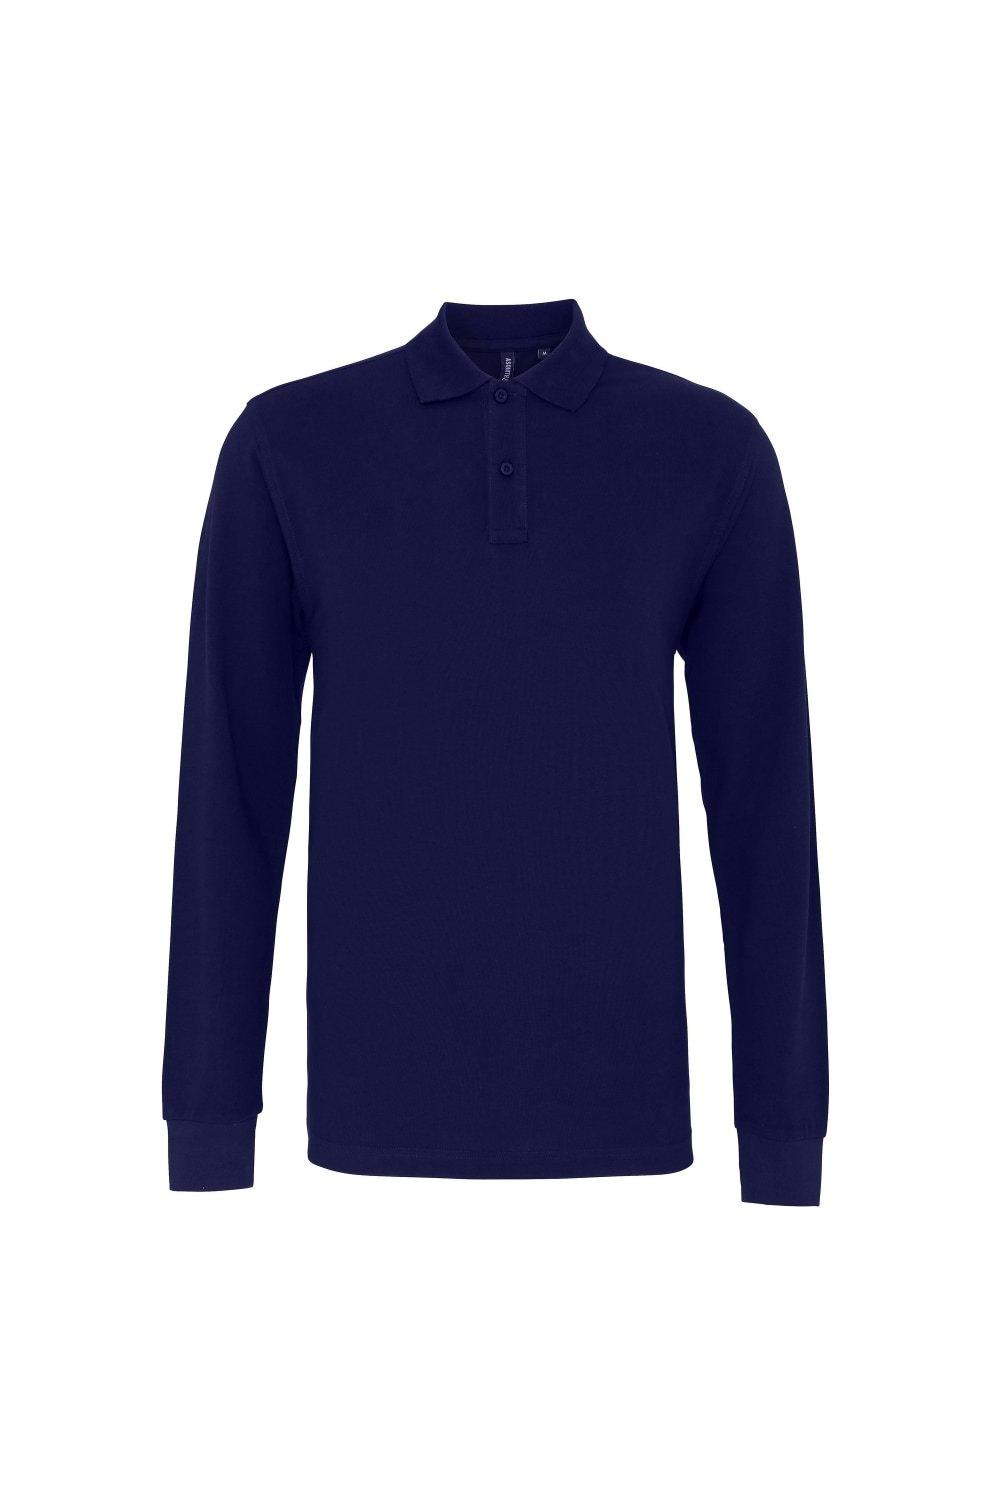 Рубашка поло классического кроя с длинными рукавами Asquith & Fox, темно-синий